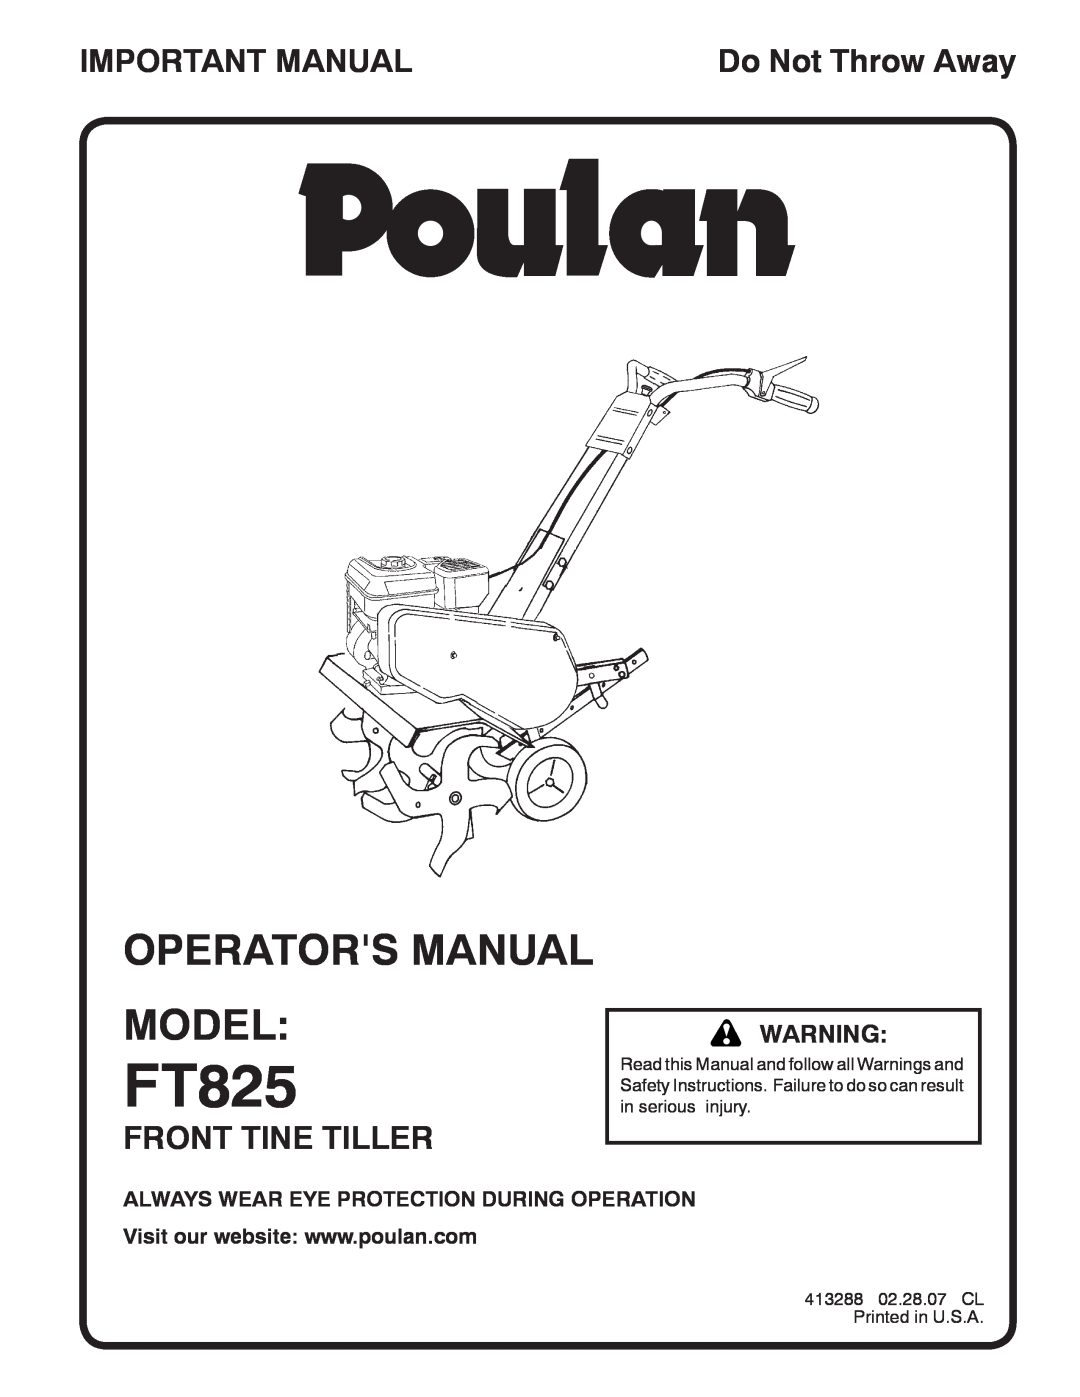 Poulan 413288 manual Operators Manual Model, Important Manual, Front Tine Tiller, Do Not Throw Away, FT825 